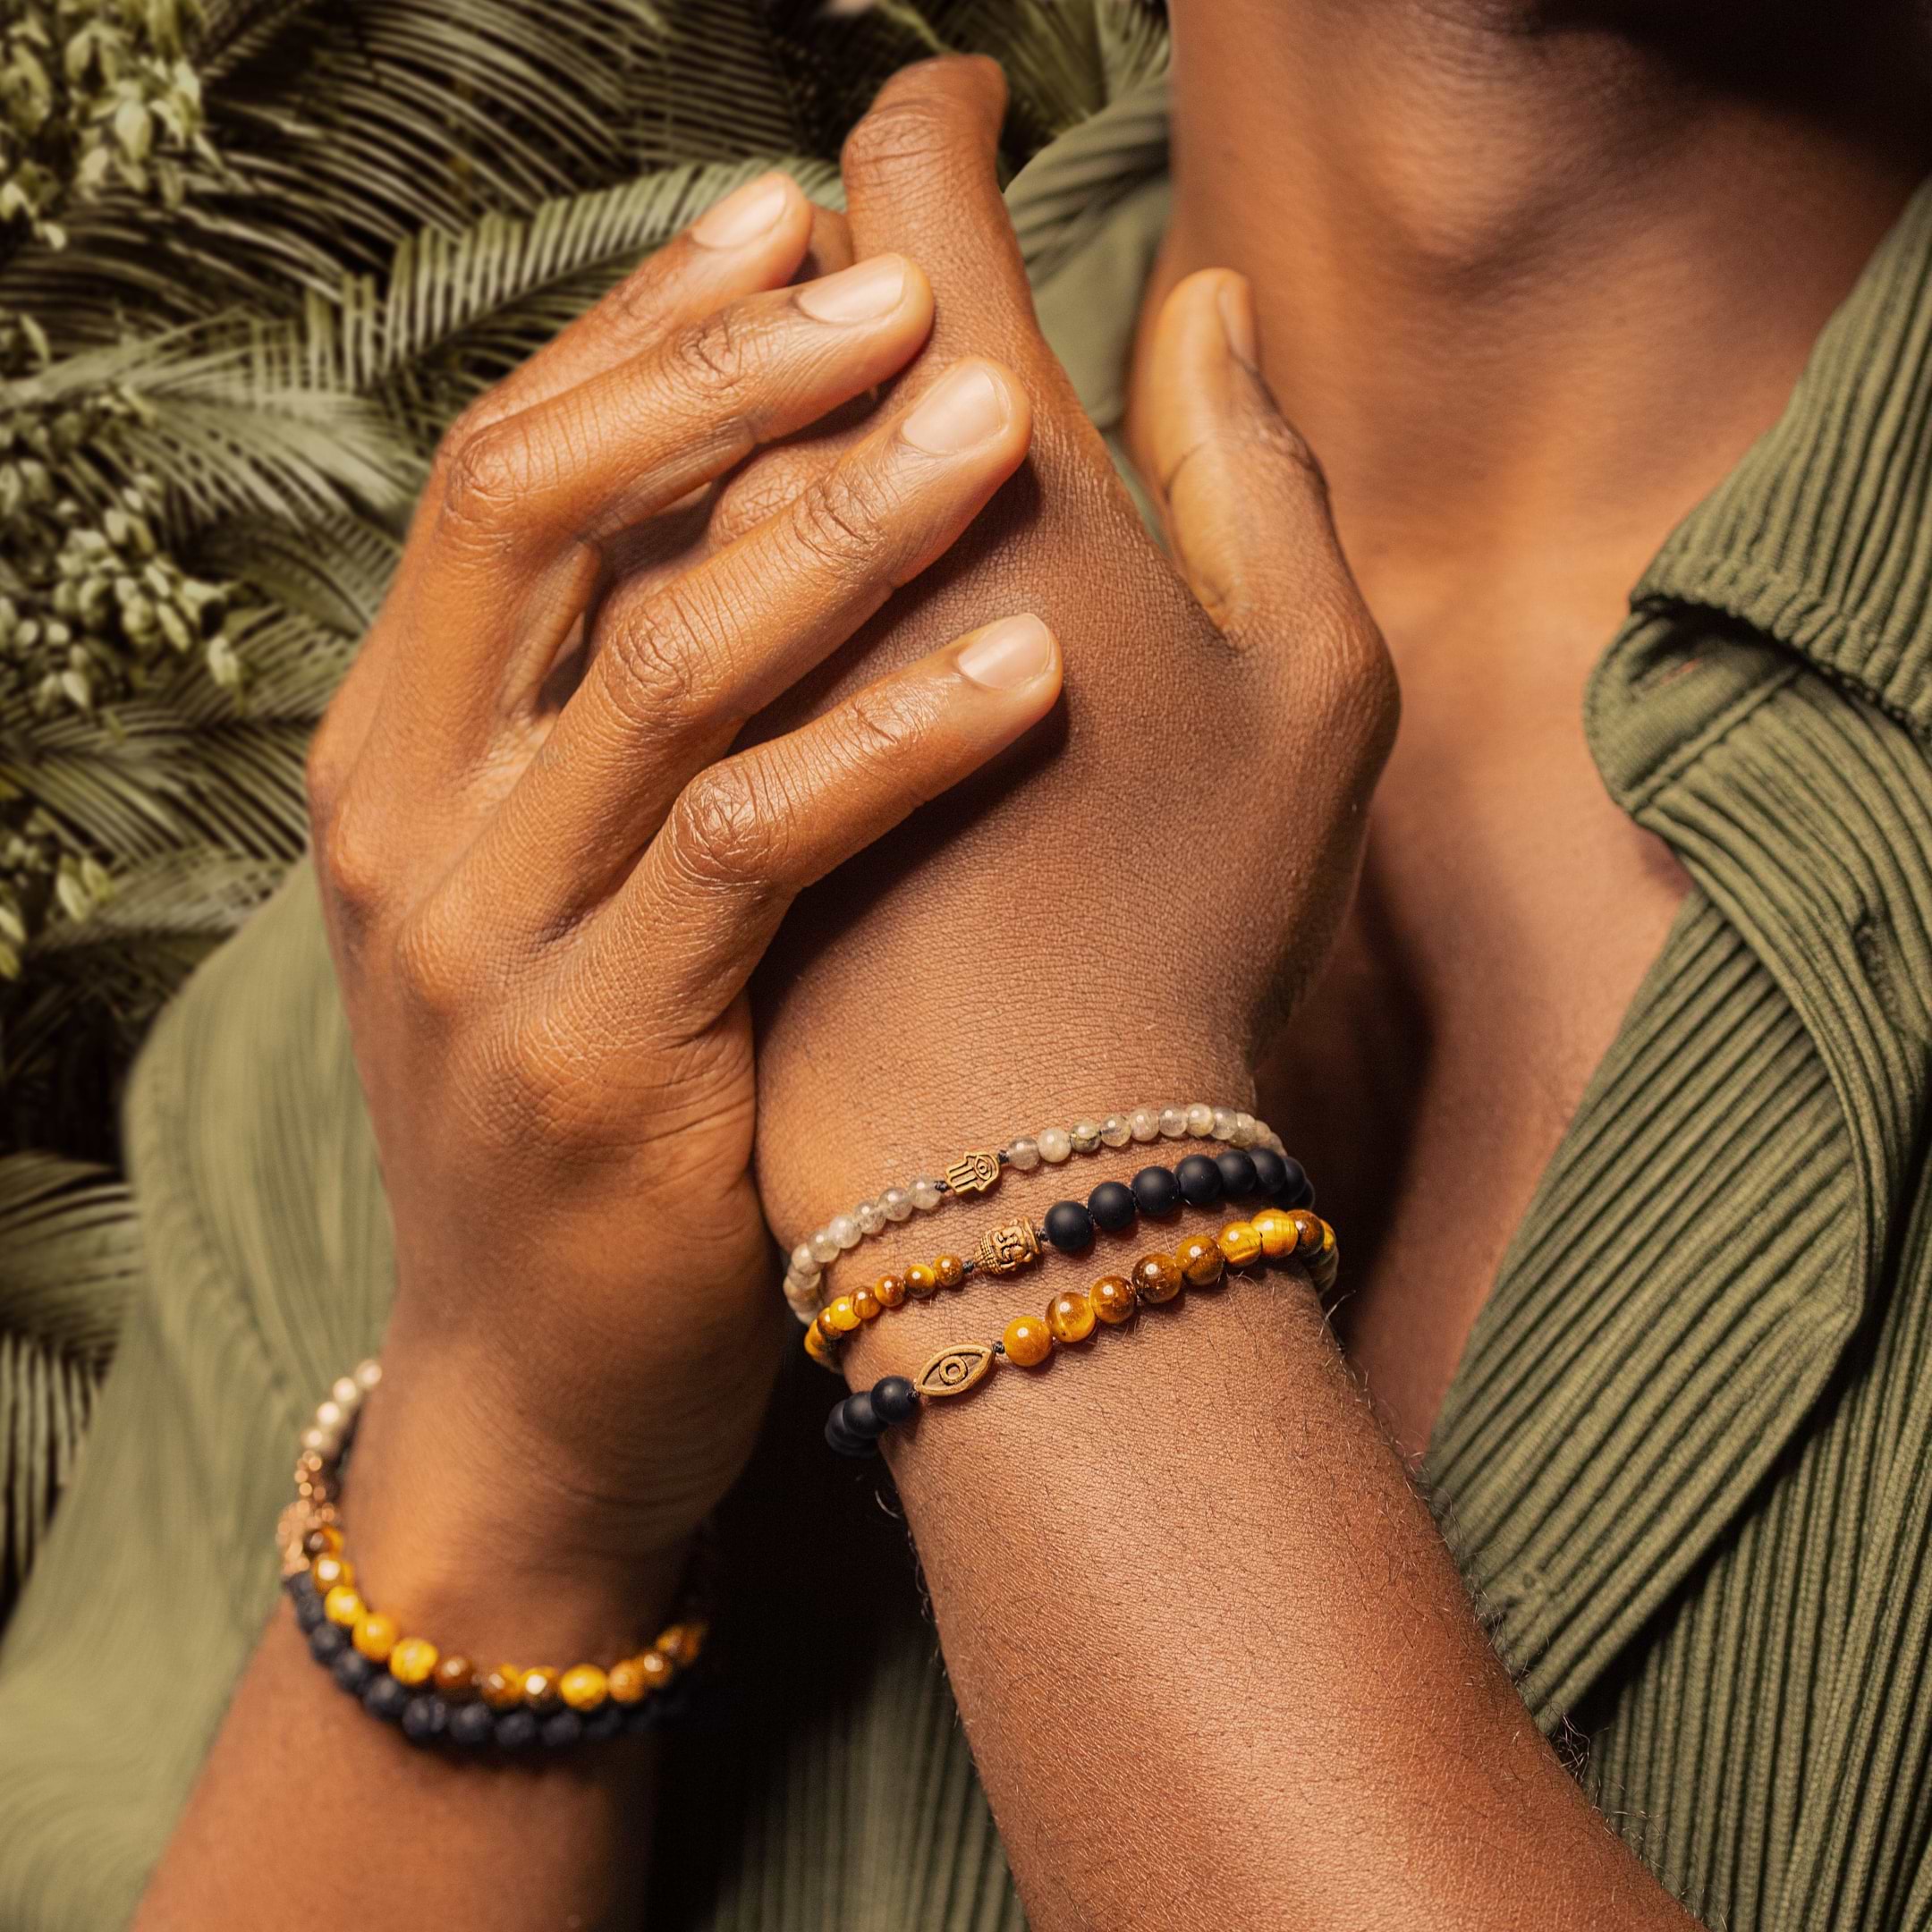 discount 92% WOMEN FASHION Accessories Bracelet Brown Single NoName bracelet 